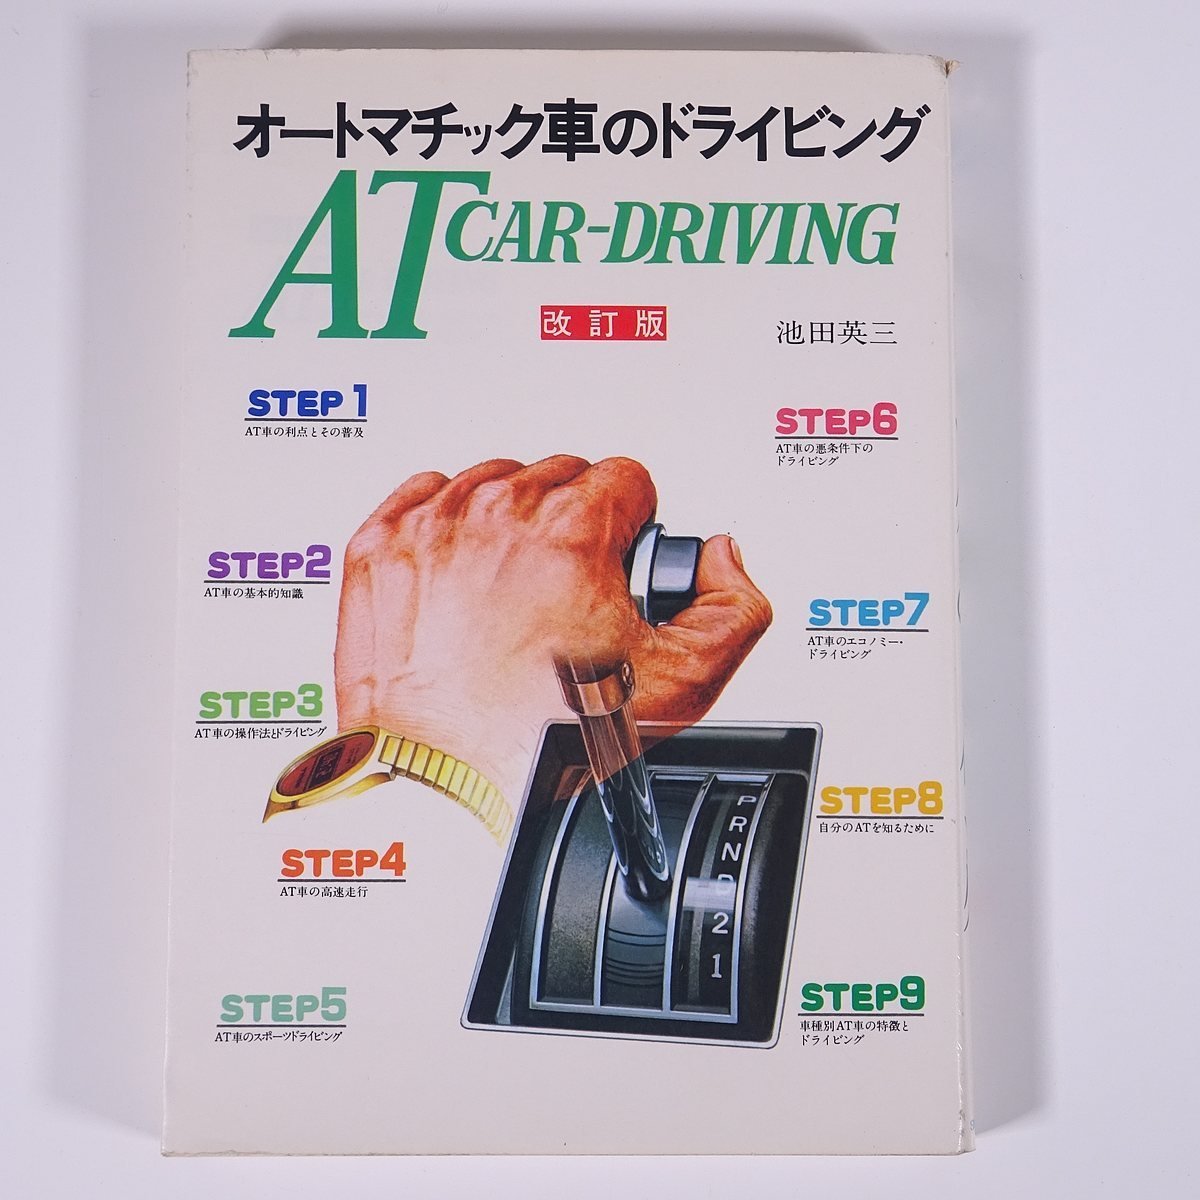 オートマチック車のドライビング 改訂版 池田英三 山海堂 1985 単行本 自動車 カー 運転 AT車の画像1